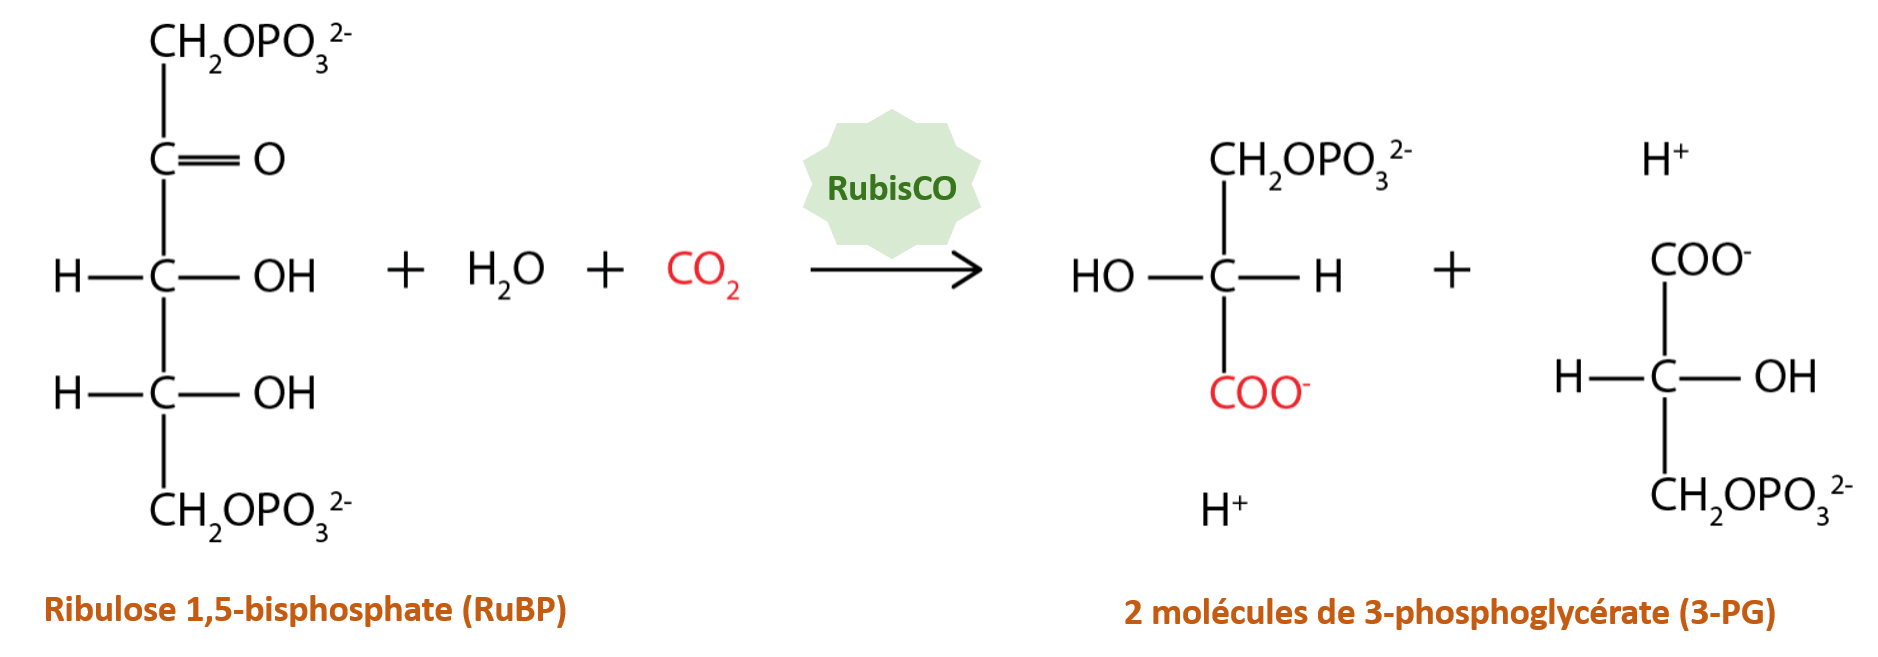 Le cycle de Calvin est initié par la fixation du carbone à l'aide de l'enzyme RubisCO.